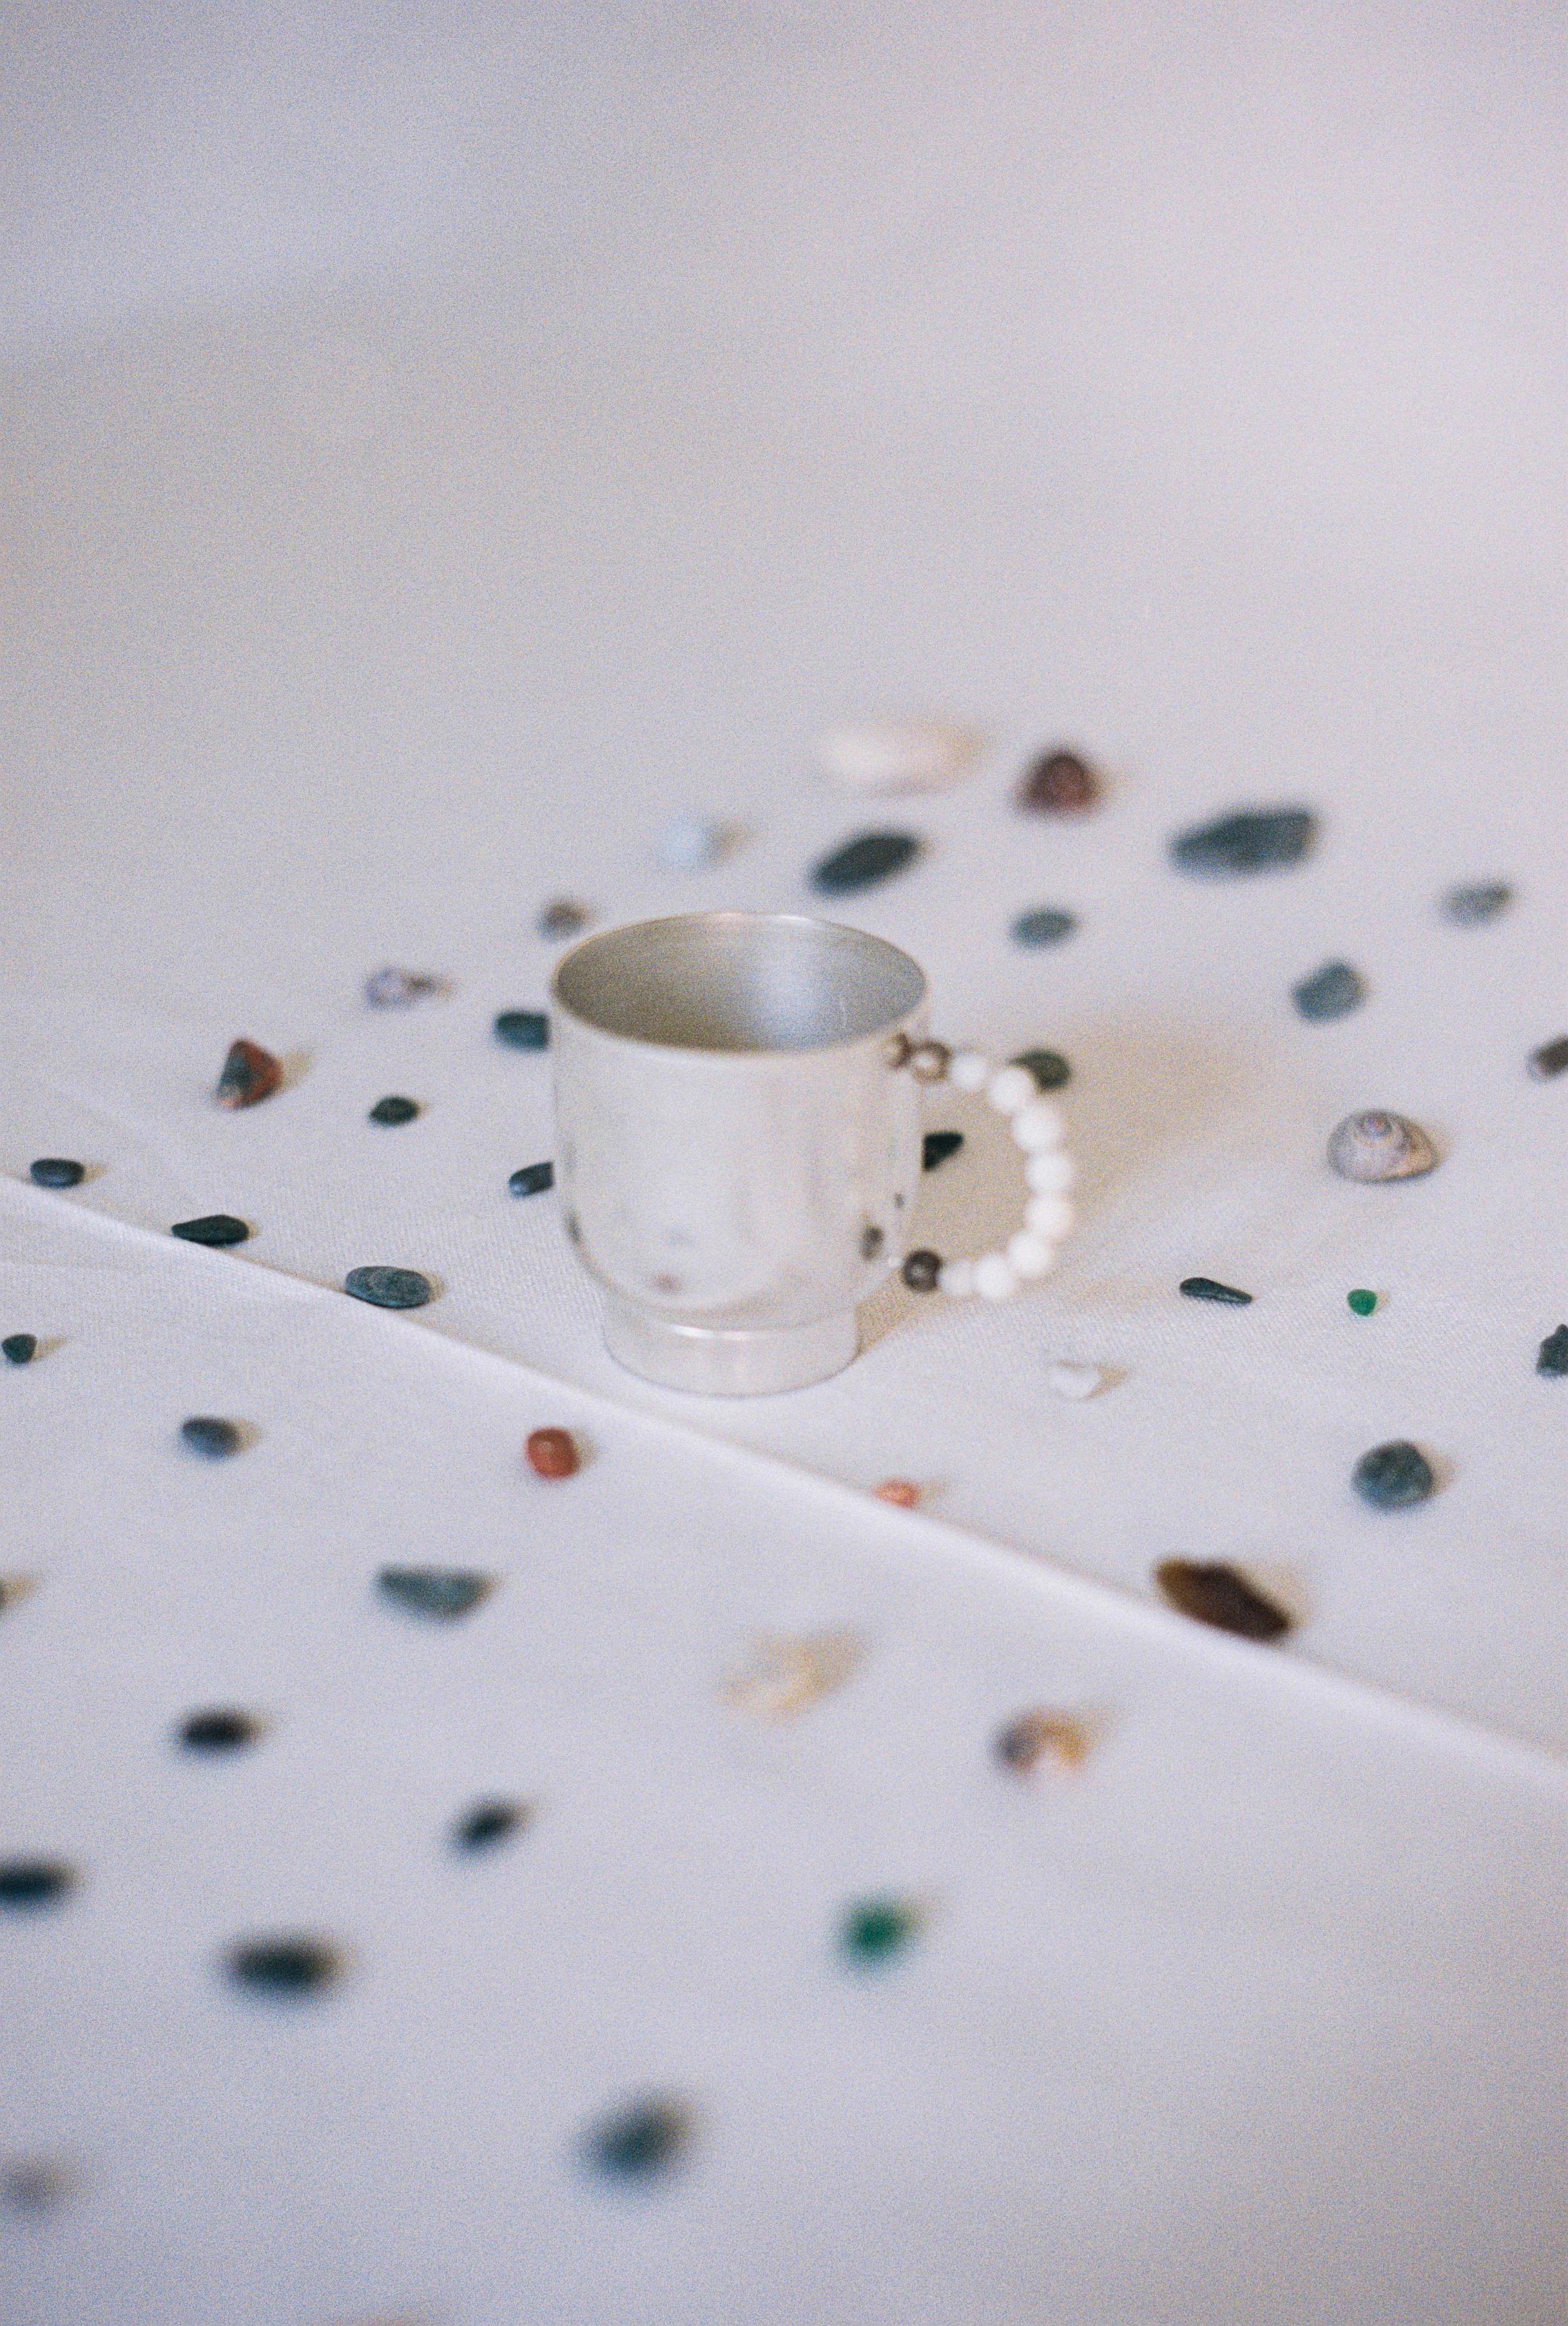 Verbessern Sie Ihr tägliches Tee- oder Kaffeeritual mit unserem  perlina cup und piattino. Der Becher und die Platte aus plattiertem Messing werden in Italien mit Hilfe von Blechdrehtechniken handgefertigt. Der Griff, verziert mit einer Reihe von